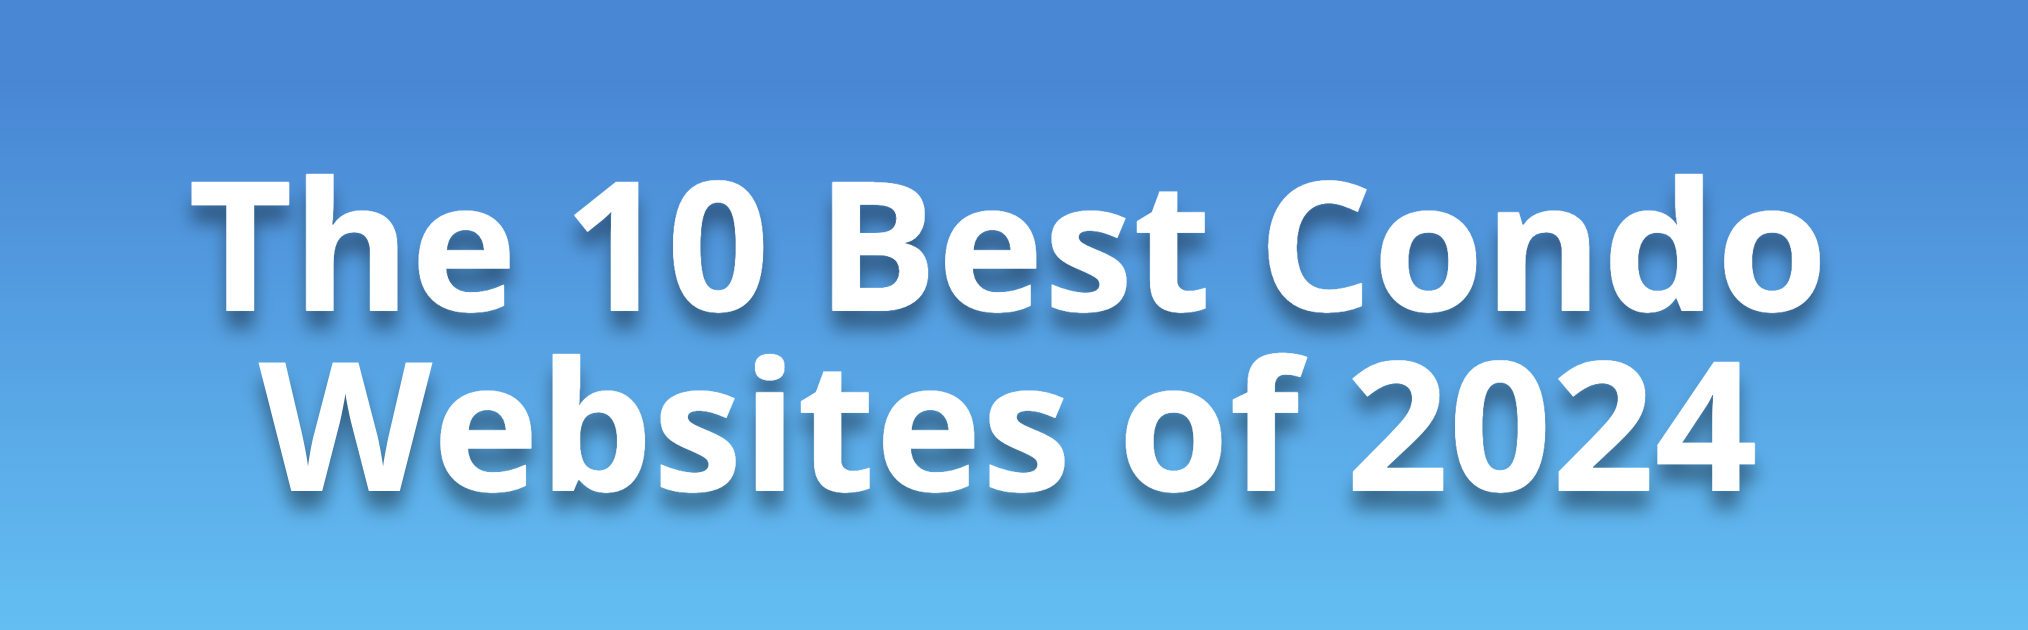 The 10 Best Condo Websites of 2024